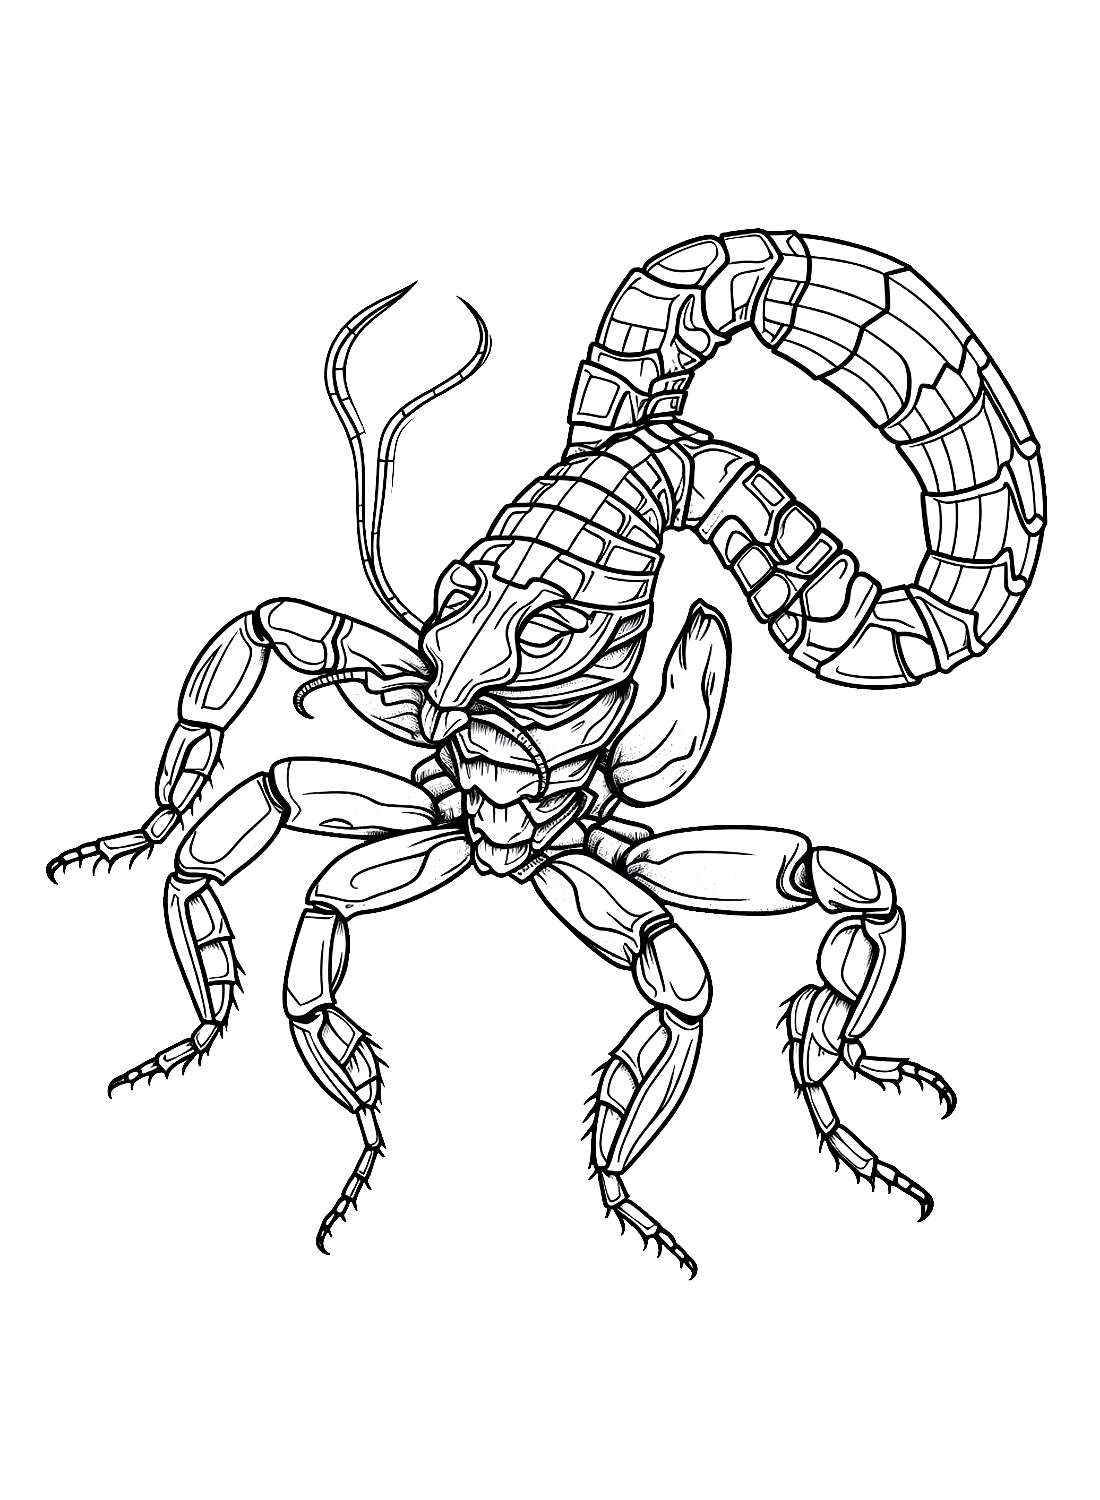 Uno scorpione dei cartoni animati di Scorpions